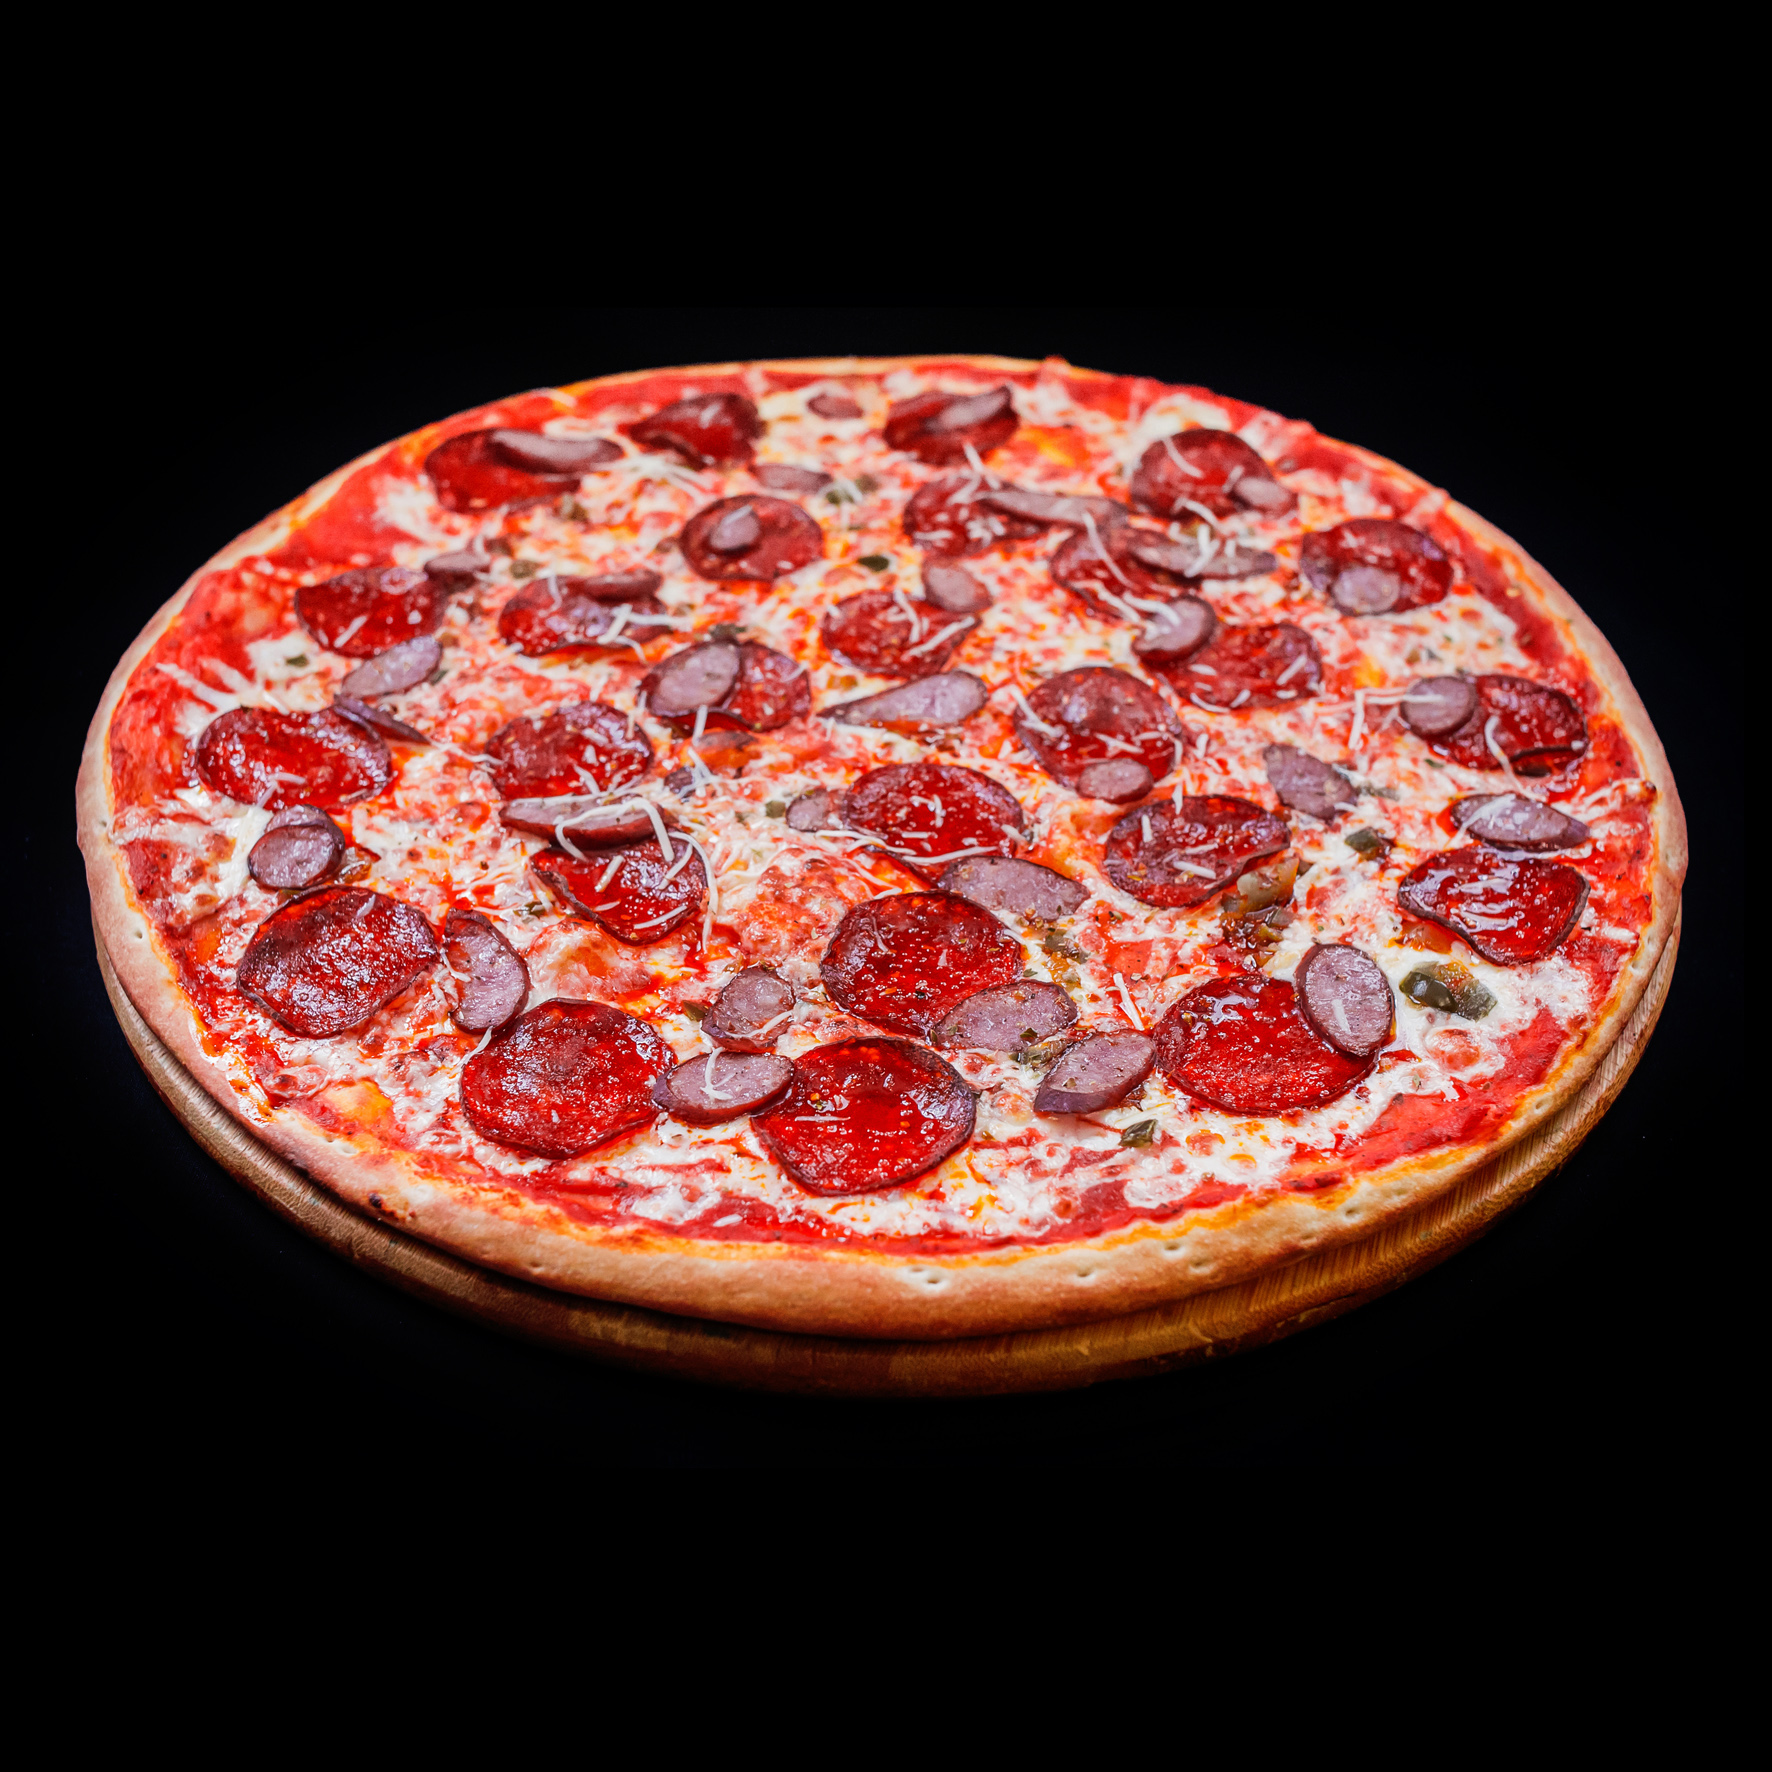 лучшая доставка пиццы в москве рейтинг фото 53